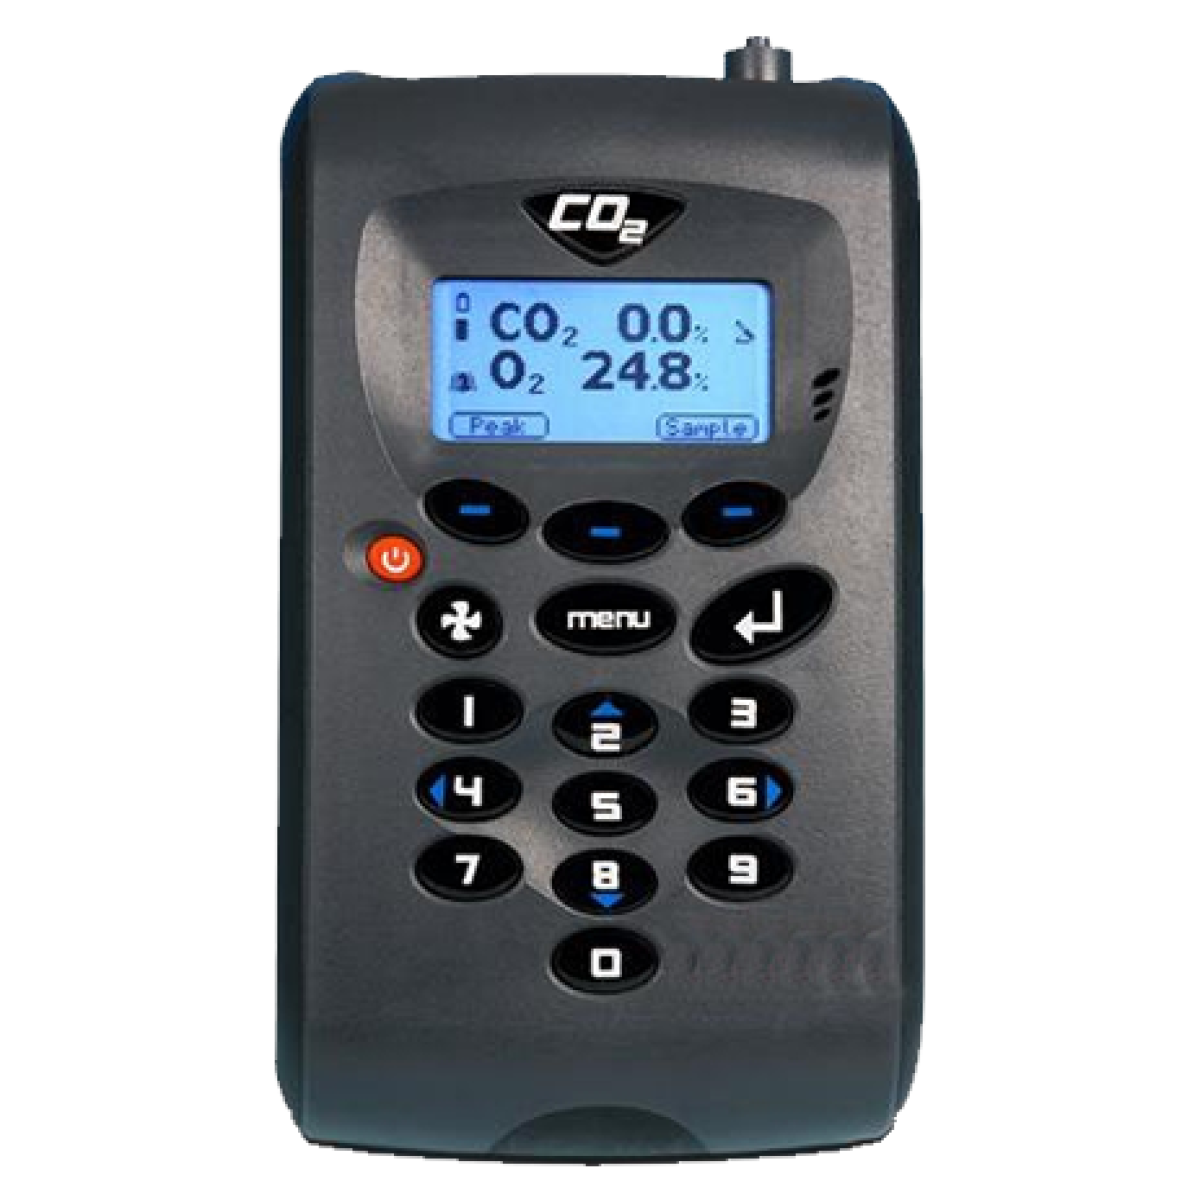 G100 Portable IVF CO2/O2 Gas Analyser